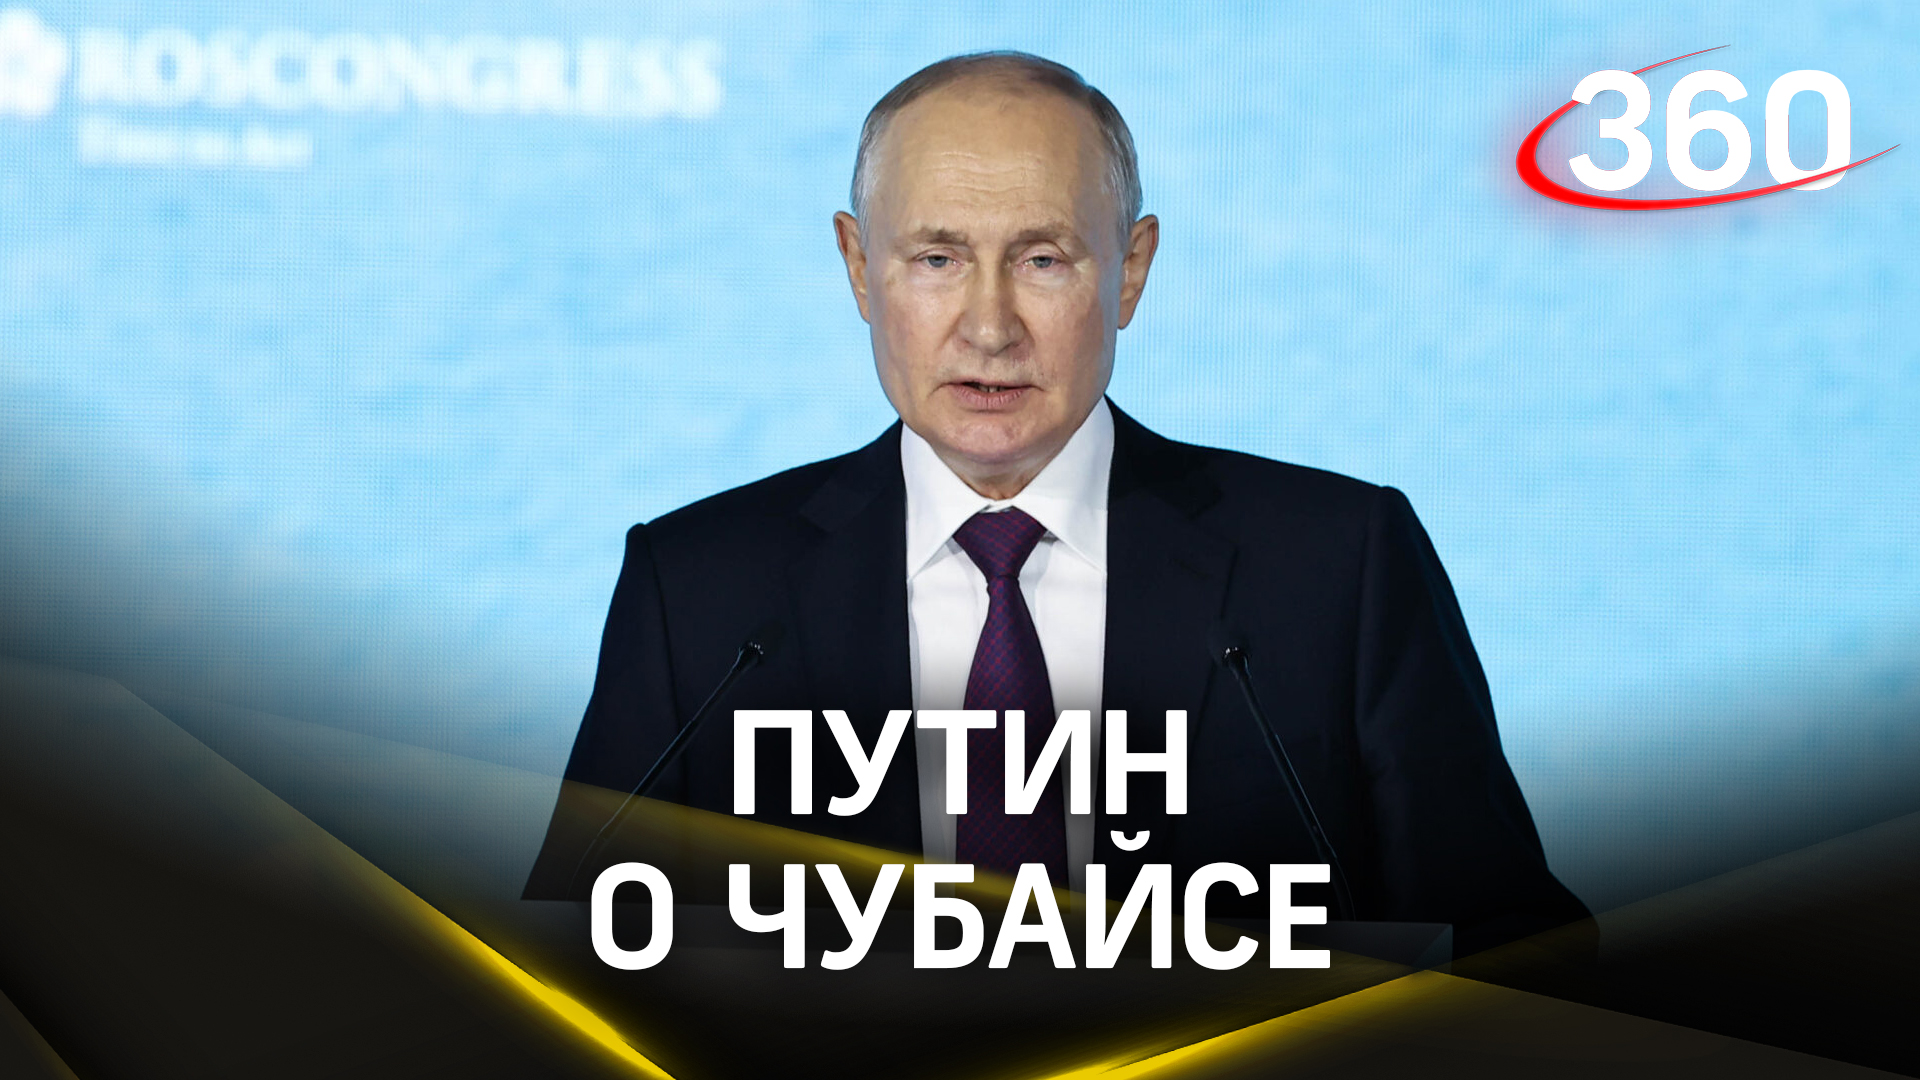 Путин о Чубайсе: «Не понимаю, зачем он удрал и на фига прячется в Израиле»